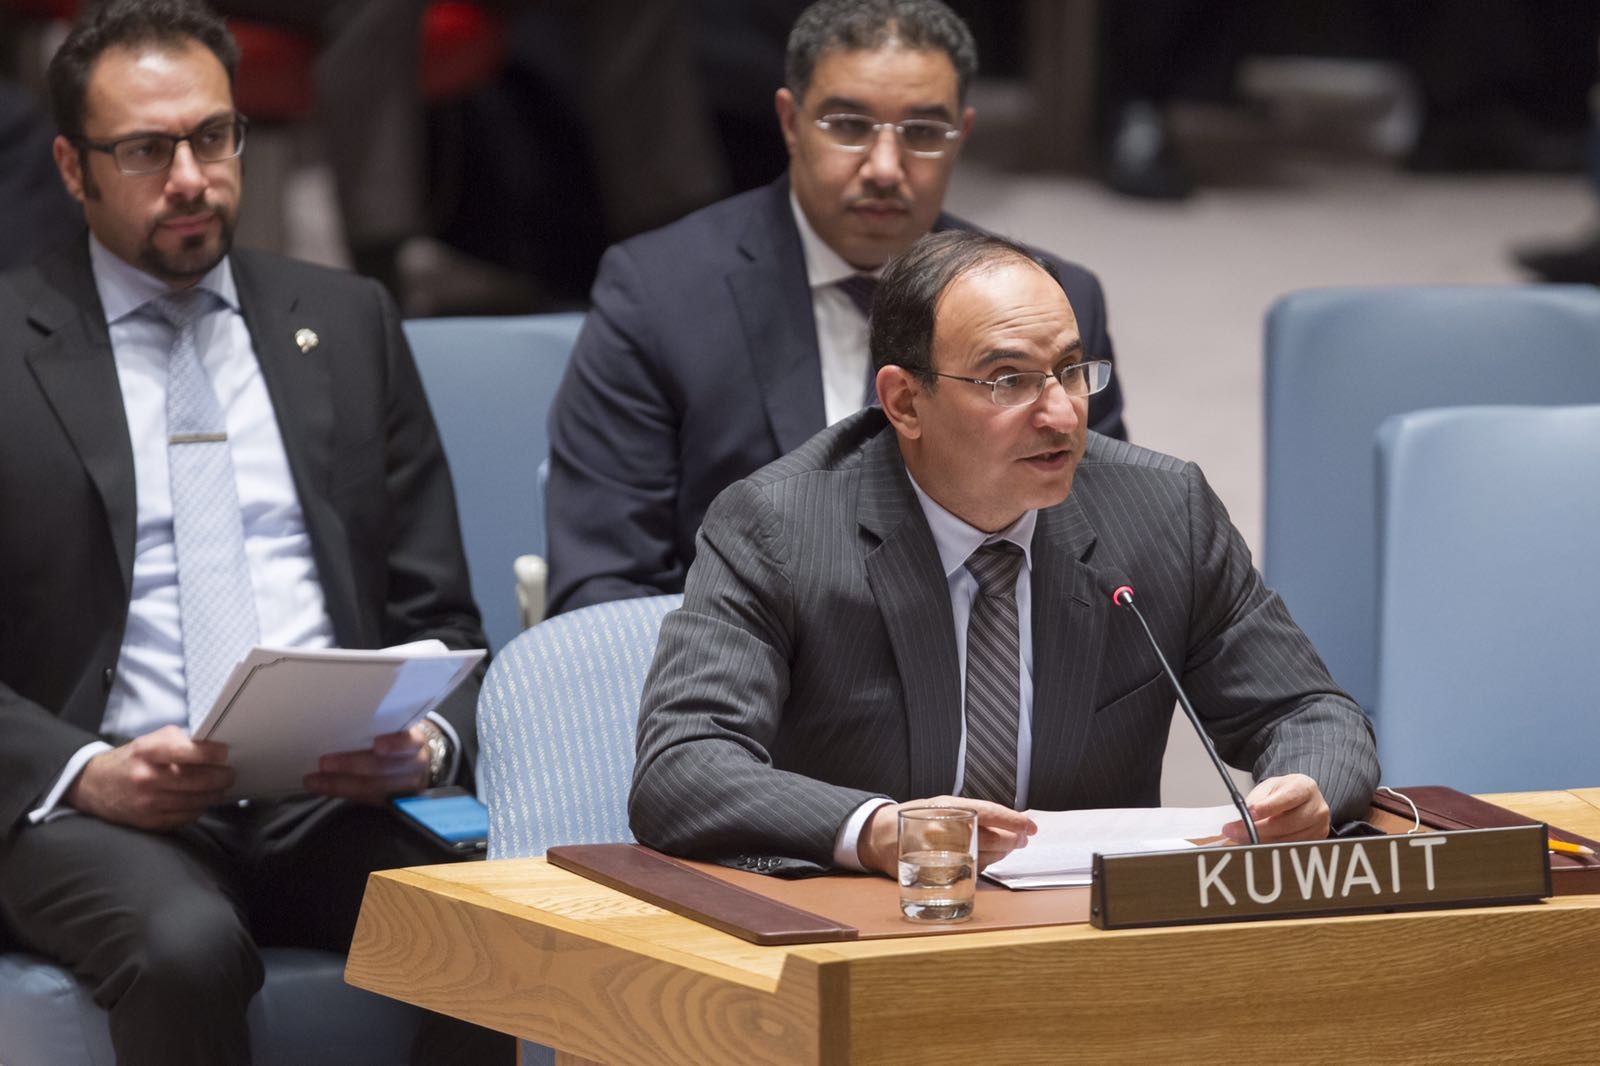 المندوب الدائم لدى الأمم المتحدة السفير منصور عياد العتيبي يلقي كلمة دولة الكويت أمام مؤتمر الأمم المتحدة التفاوضي